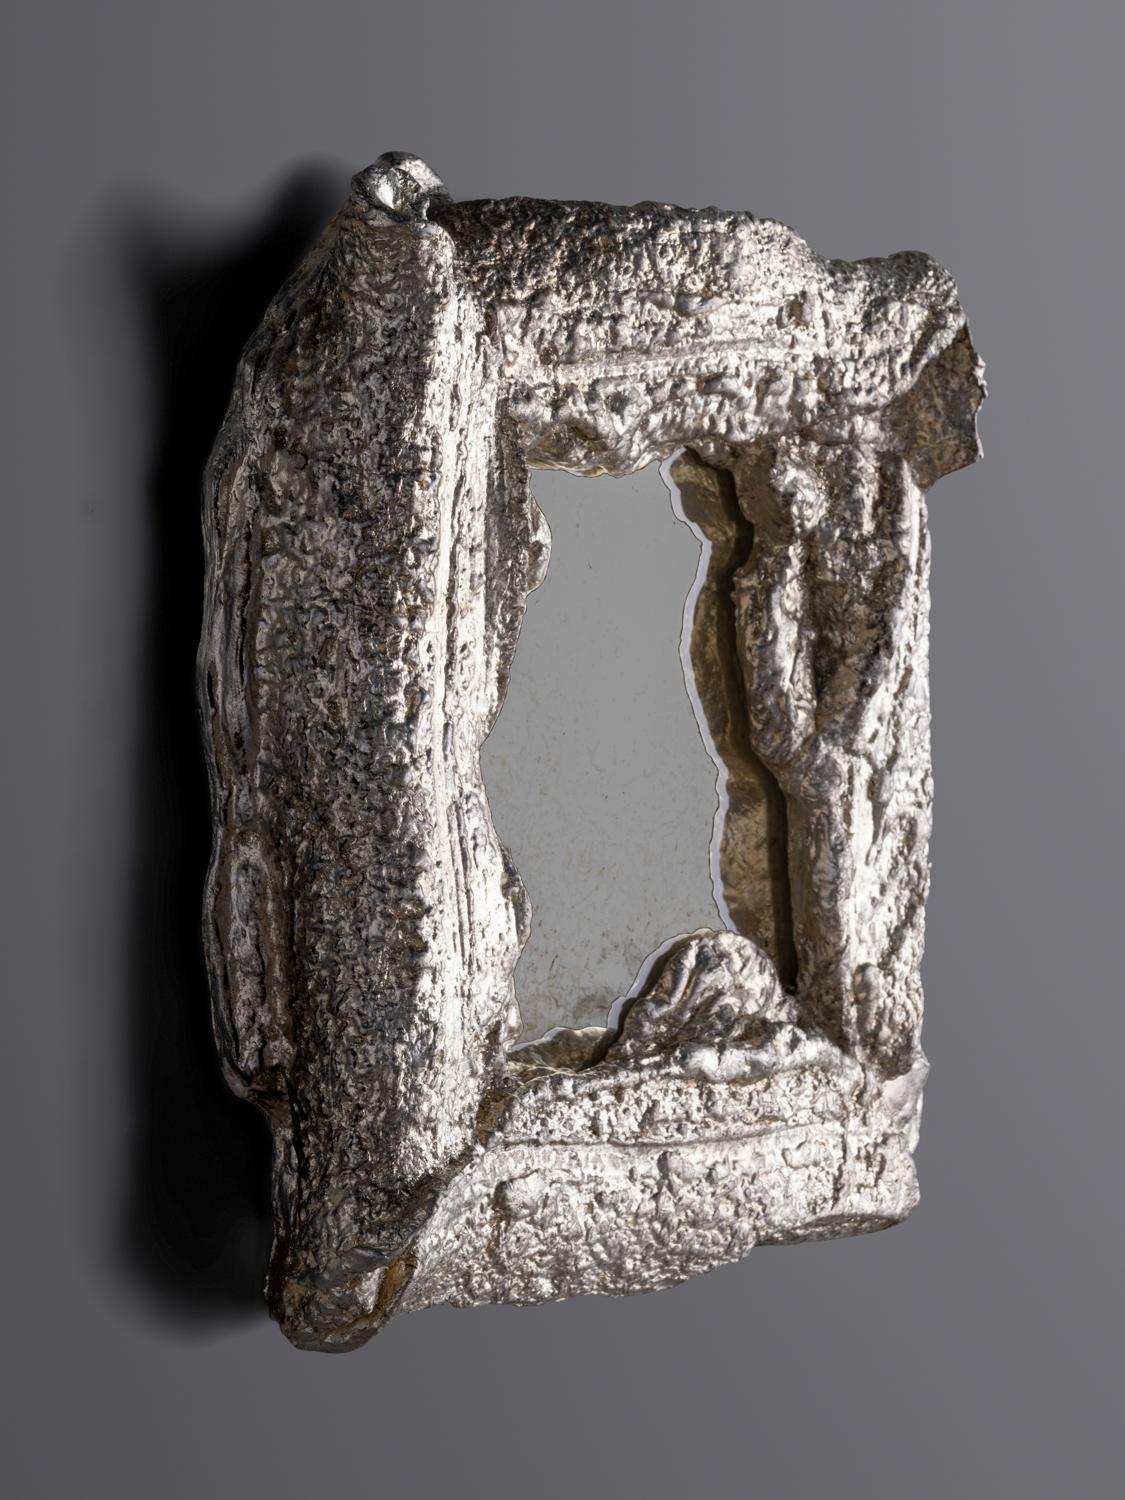 Yolande Milan Batteau (geb. 1970)
USA, 2022

Mond Blattgold auf Gips mit antikisierter Spiegelplatte, schwarzes Wachs. 